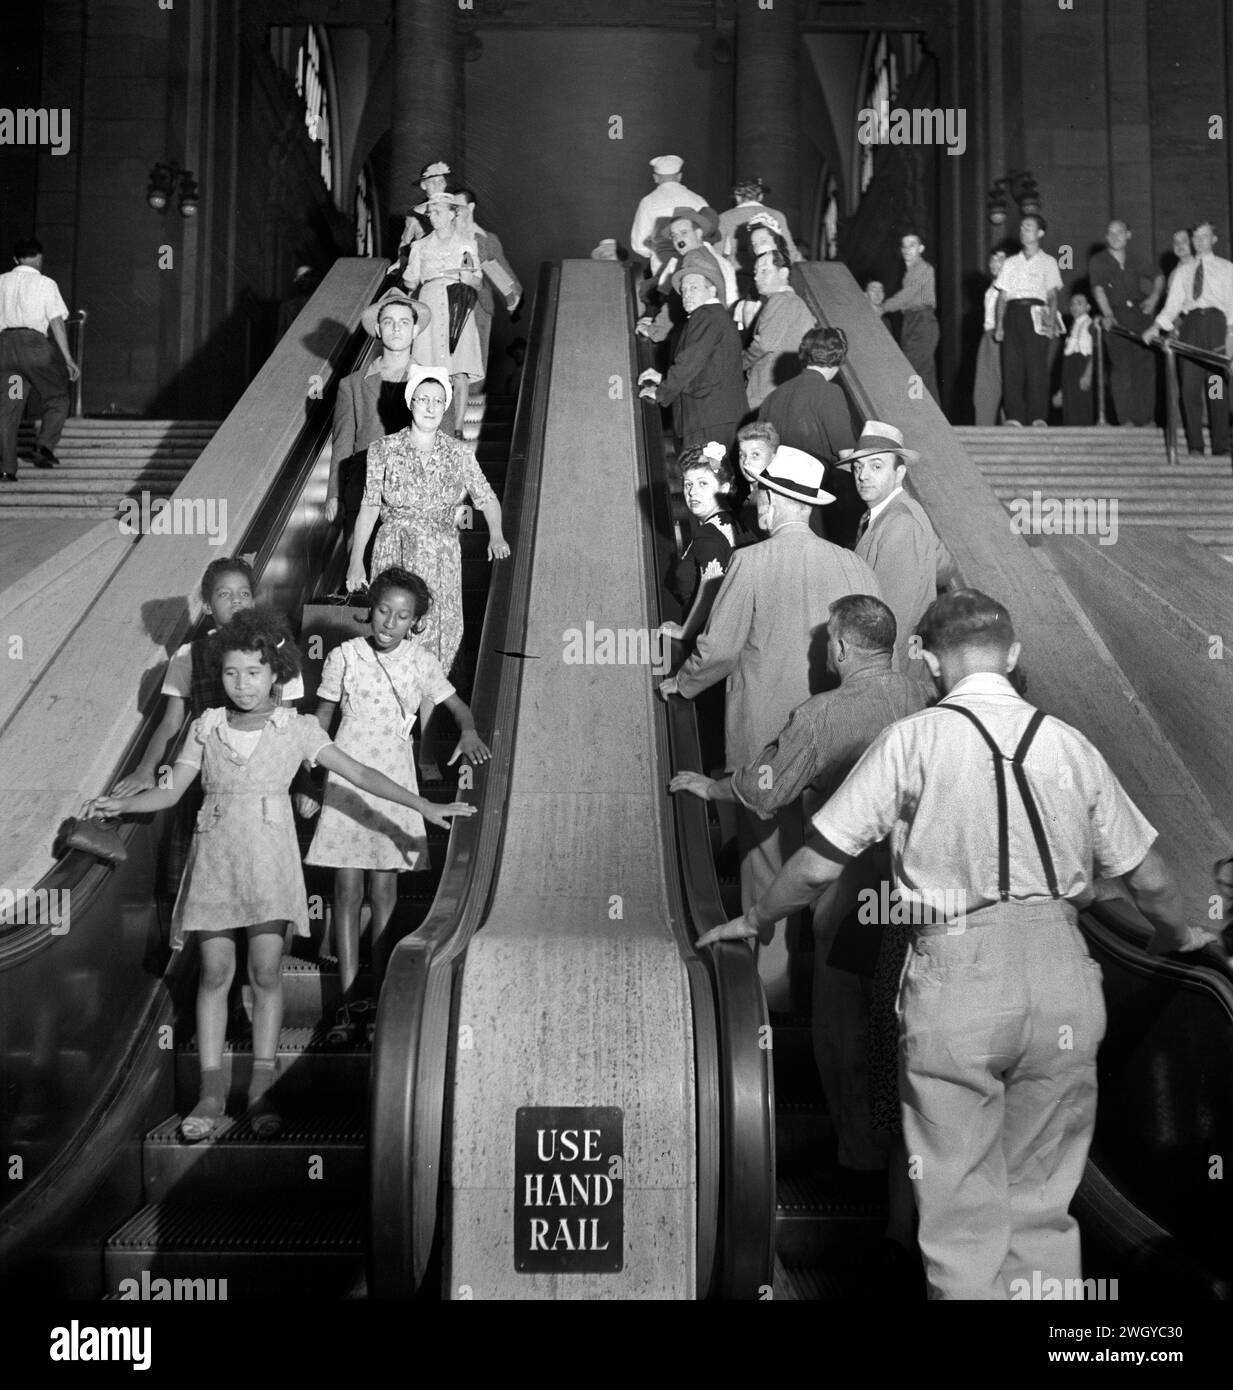 Gruppo di persone su scale mobili, Pennsylvania Station, New York City, New York, Stati Uniti, Marjory Collins, U.S. Office of War Information, agosto 1942 Foto Stock